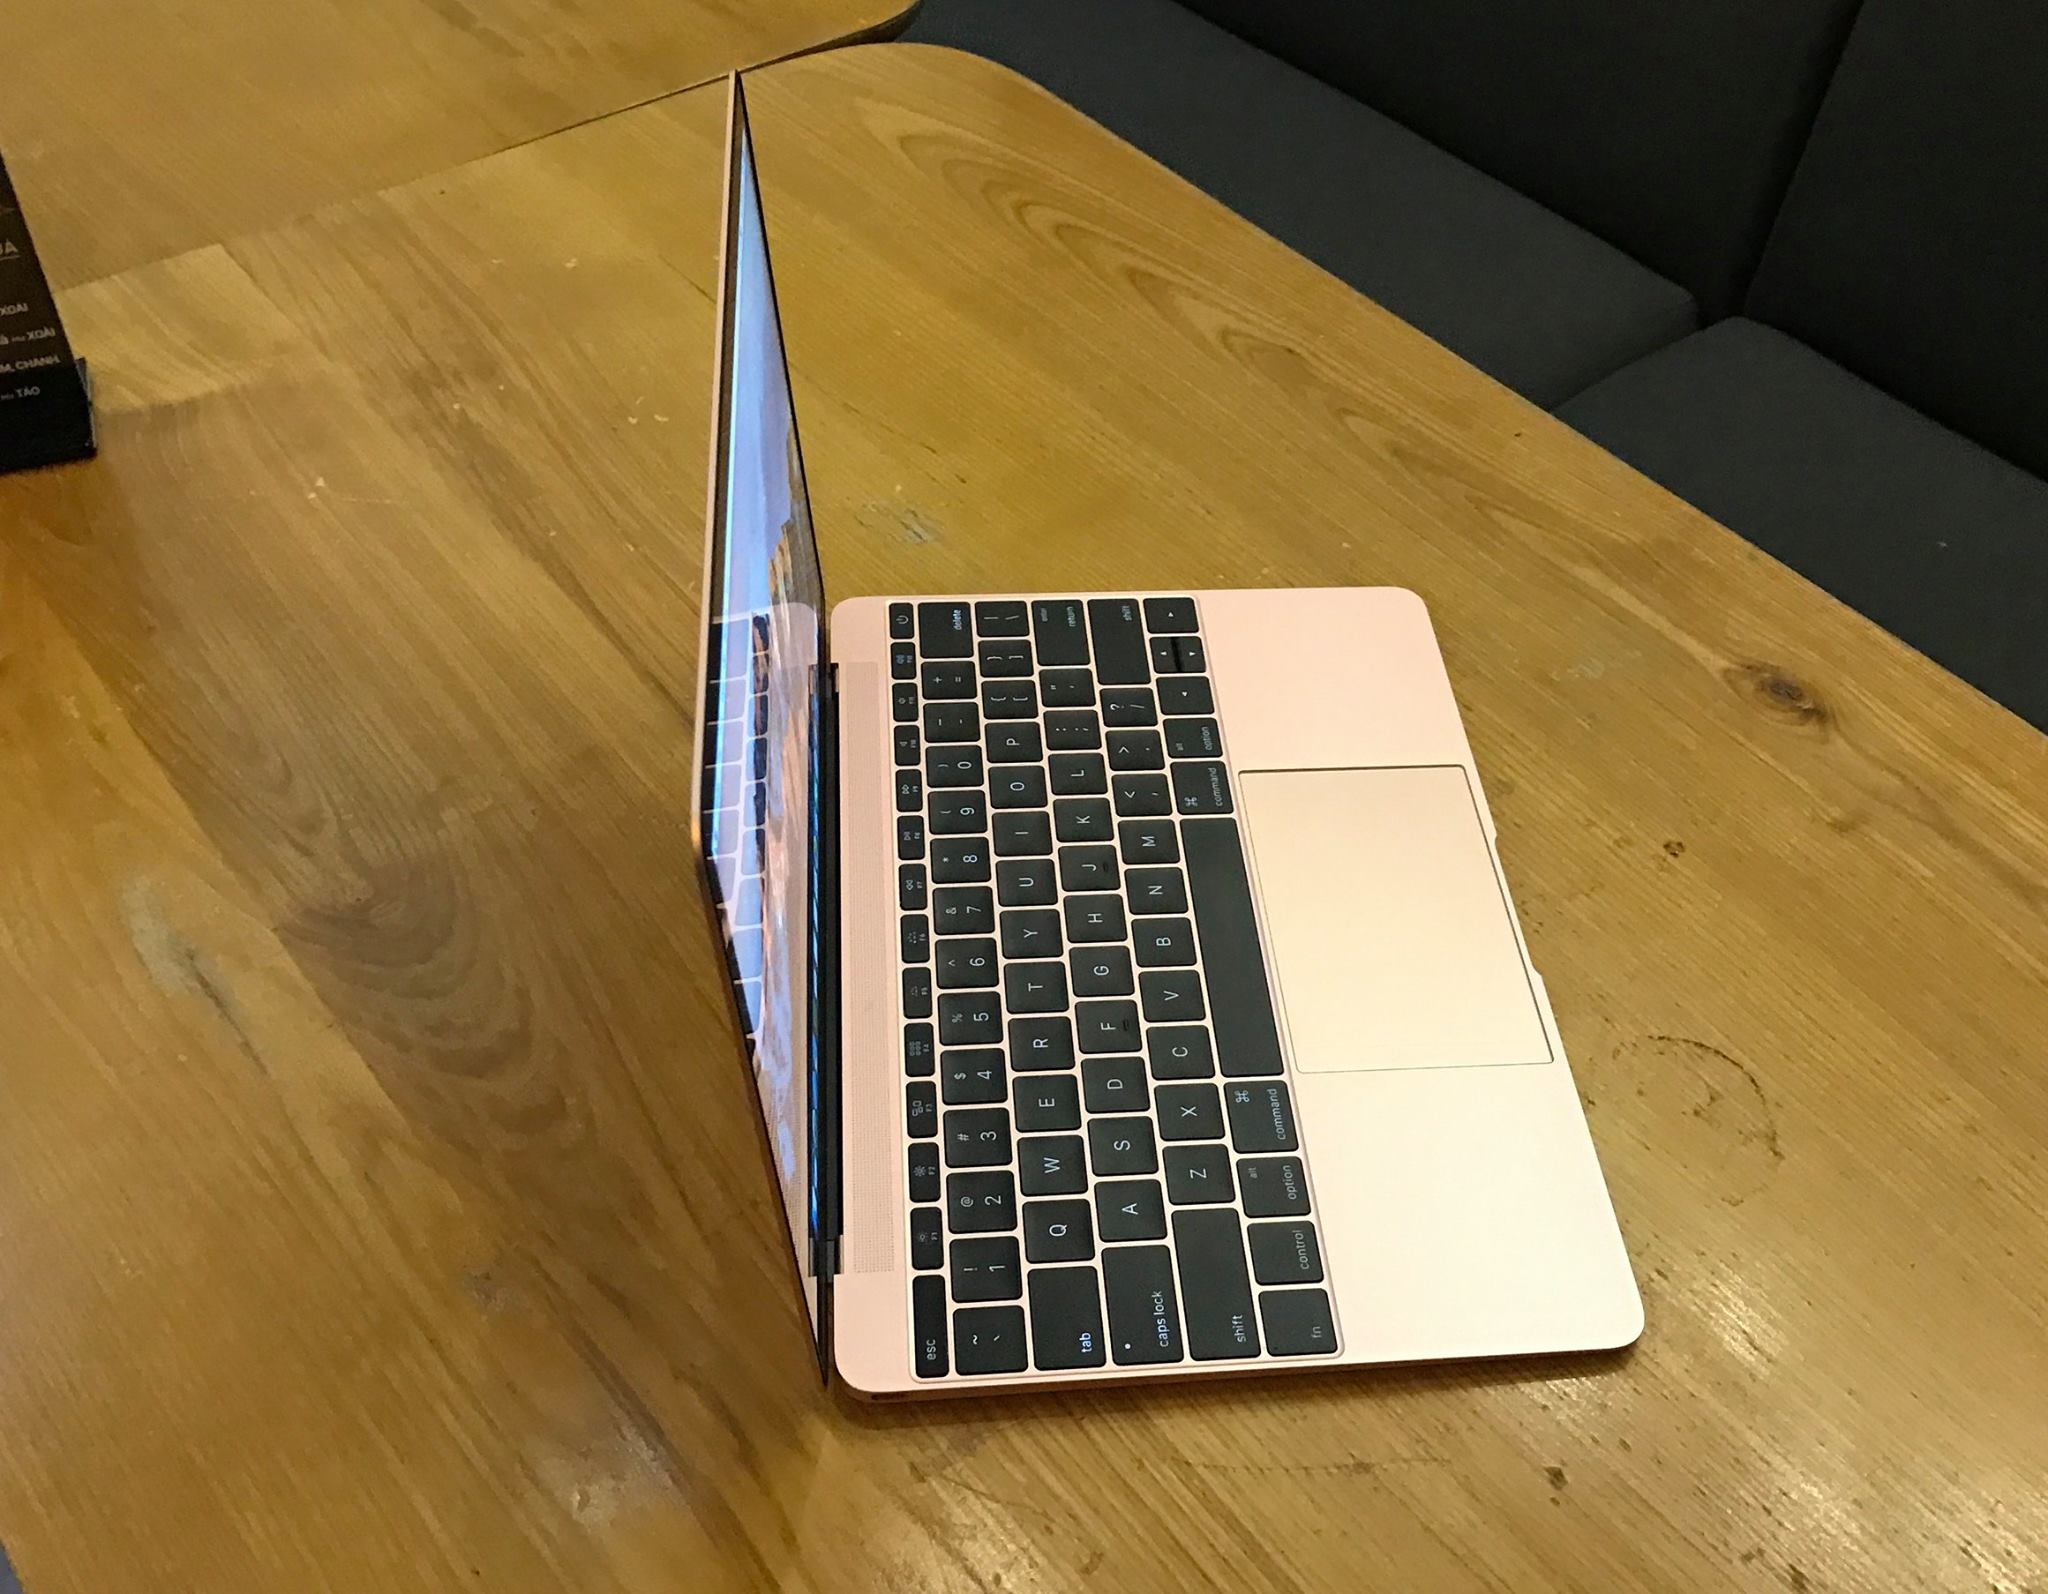 Apple The New Macbook 2016 - MLHA2 ROSE GLOD-5.jpg